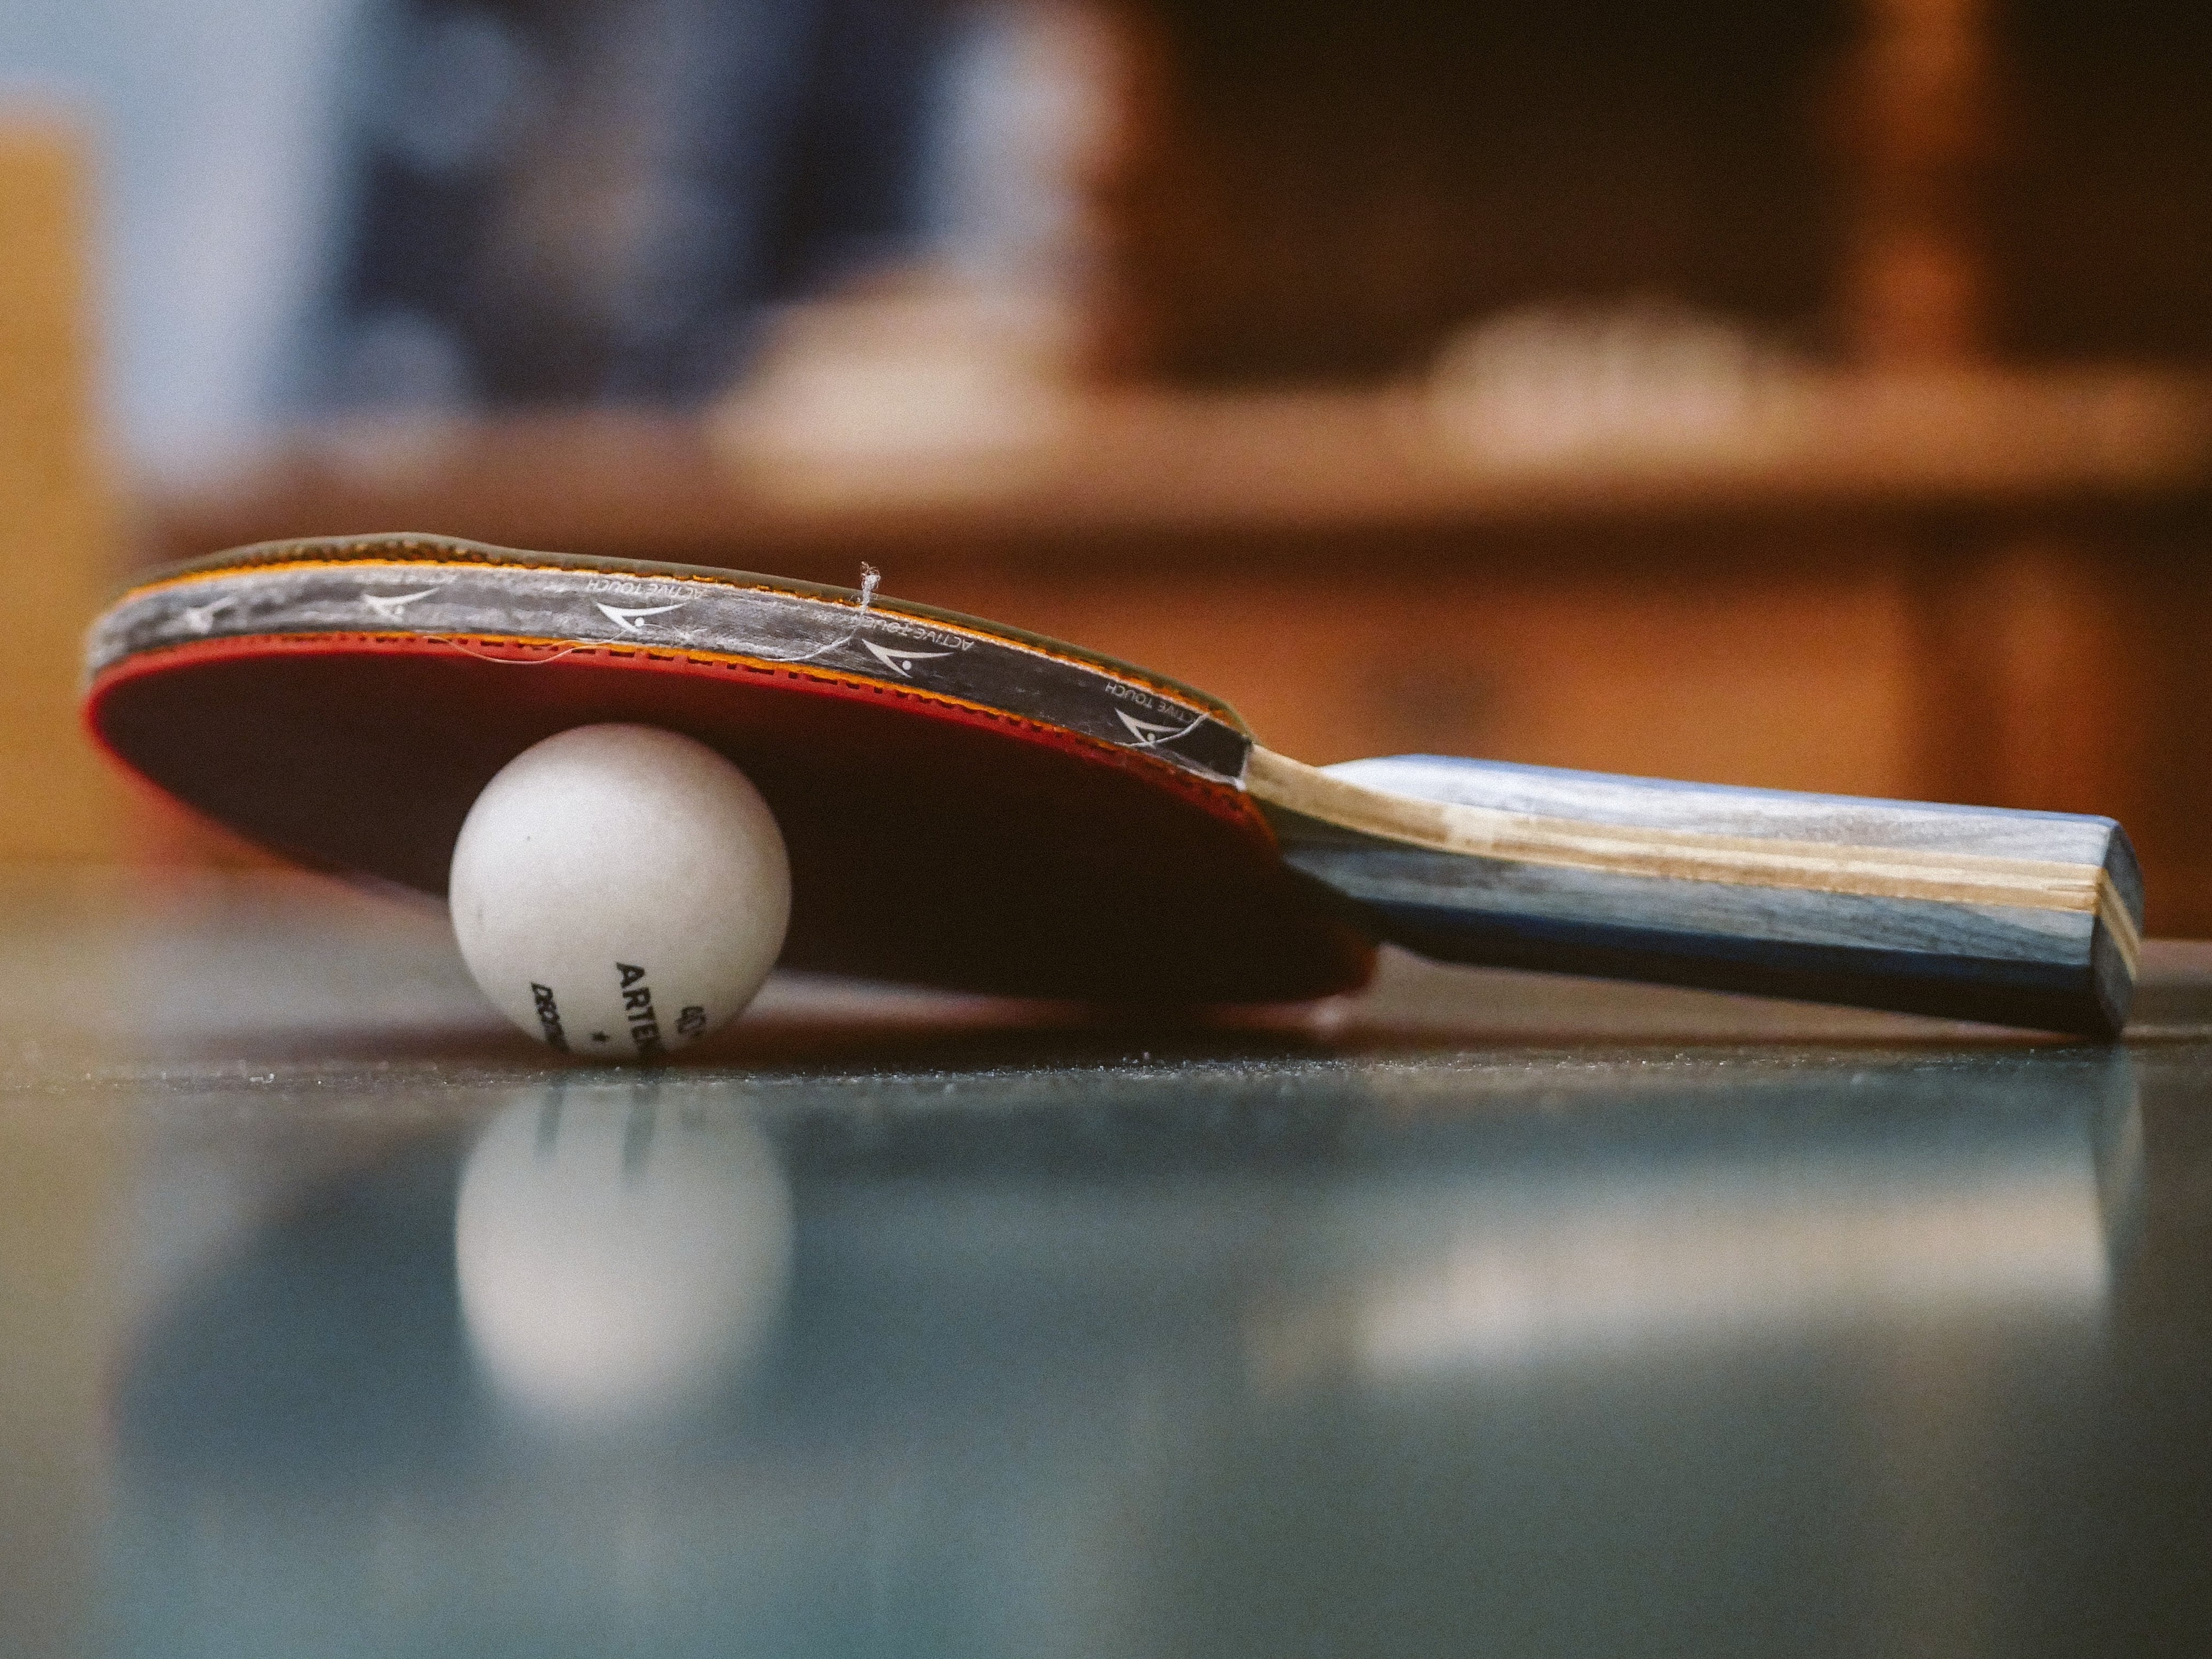 تنیس روی میز با برنامه هایی برای ان اف تی و وب سه وارد دنیای کریپتو می شود